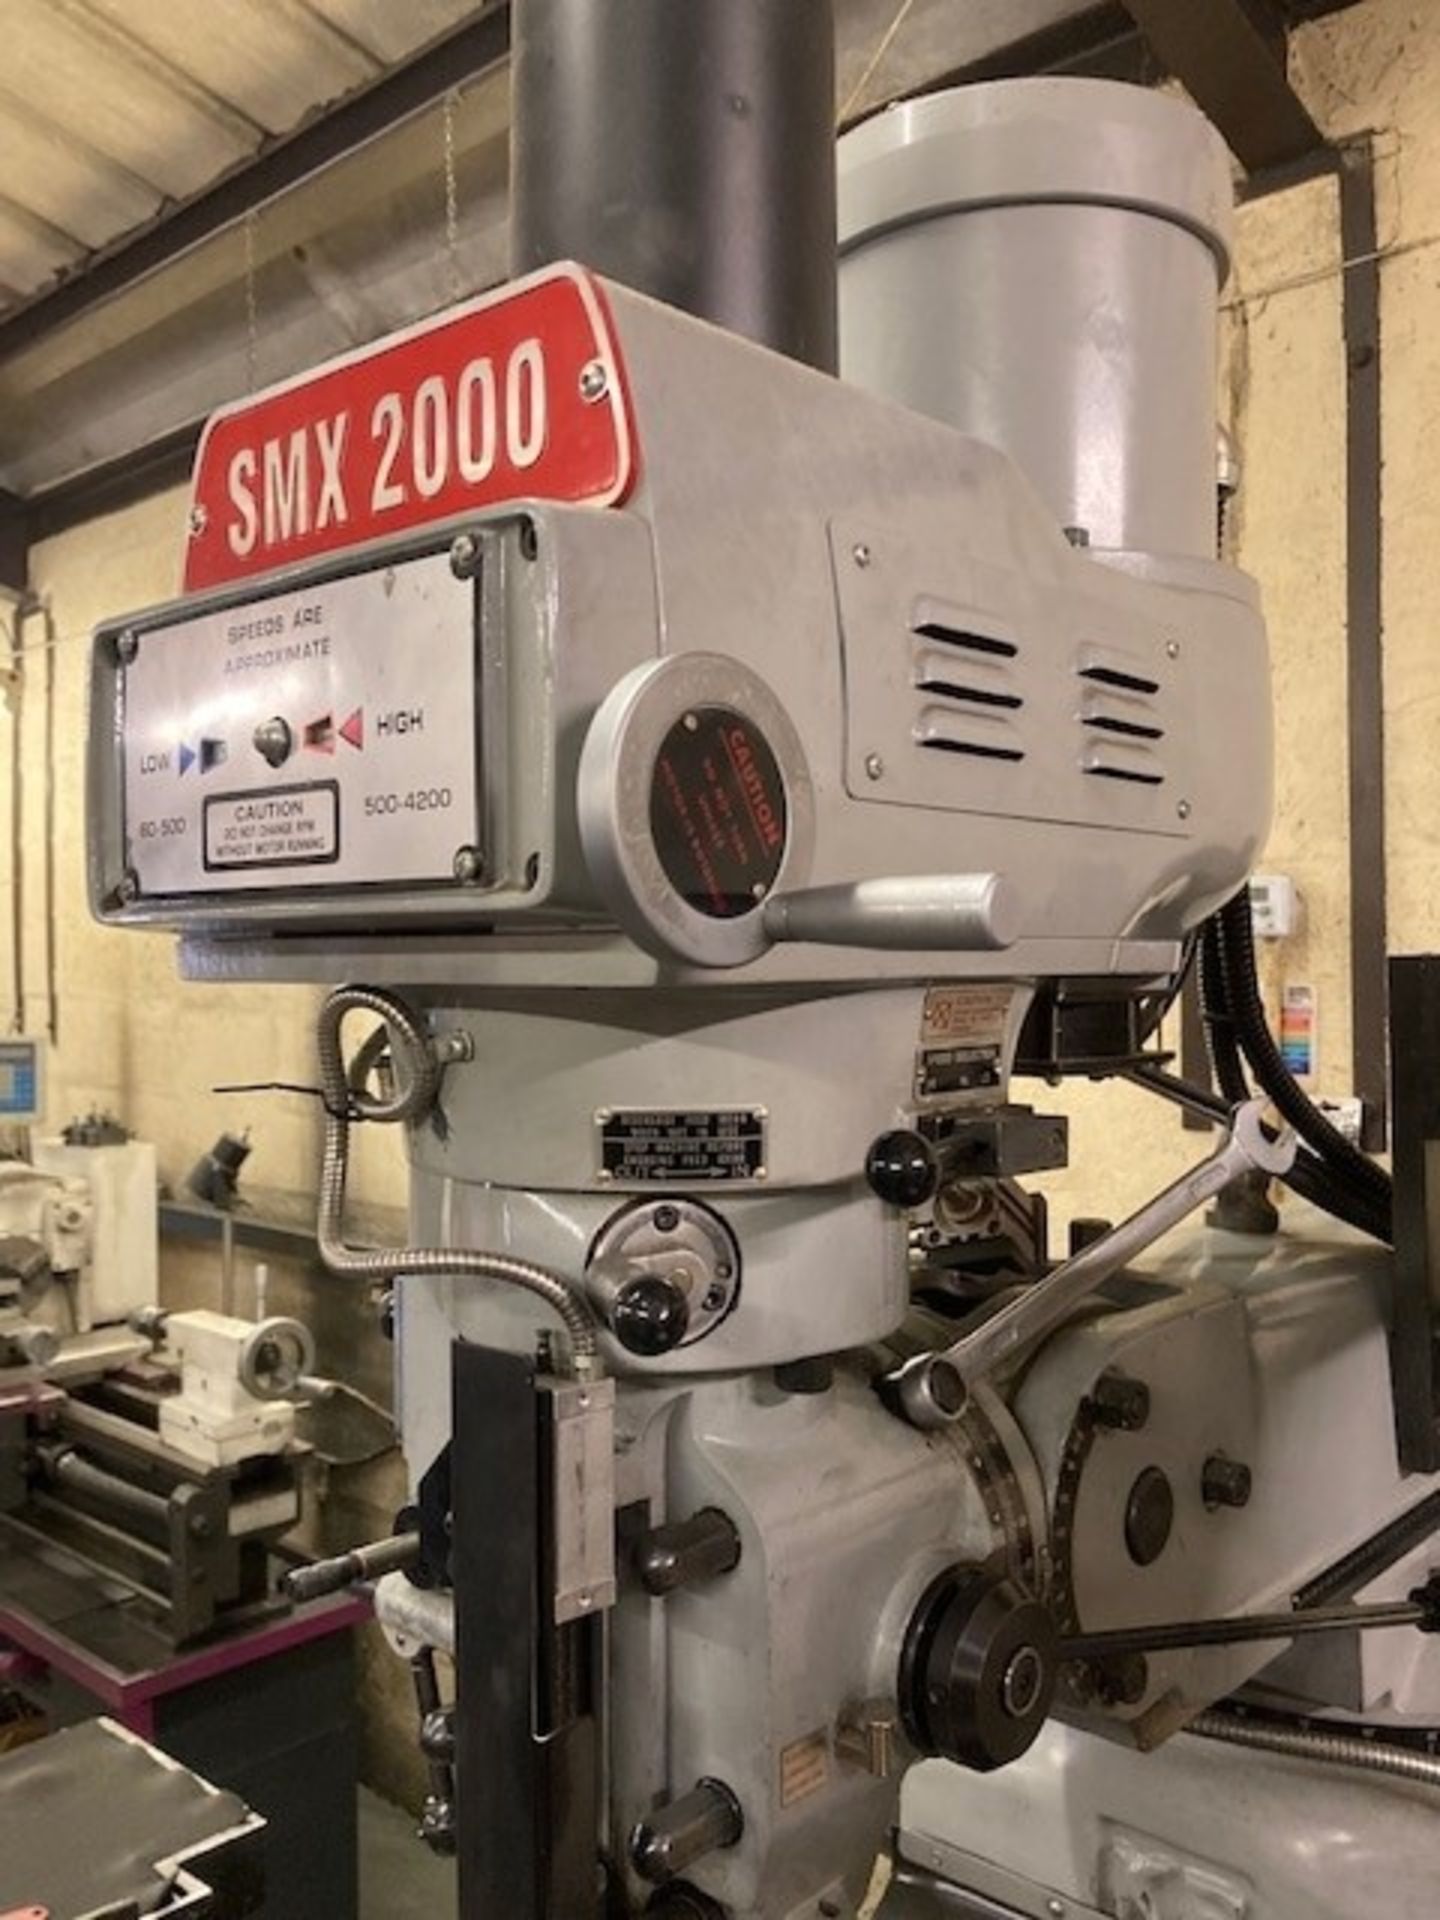 XYZ SMX 2000 CNC Milling Machine - Image 4 of 8